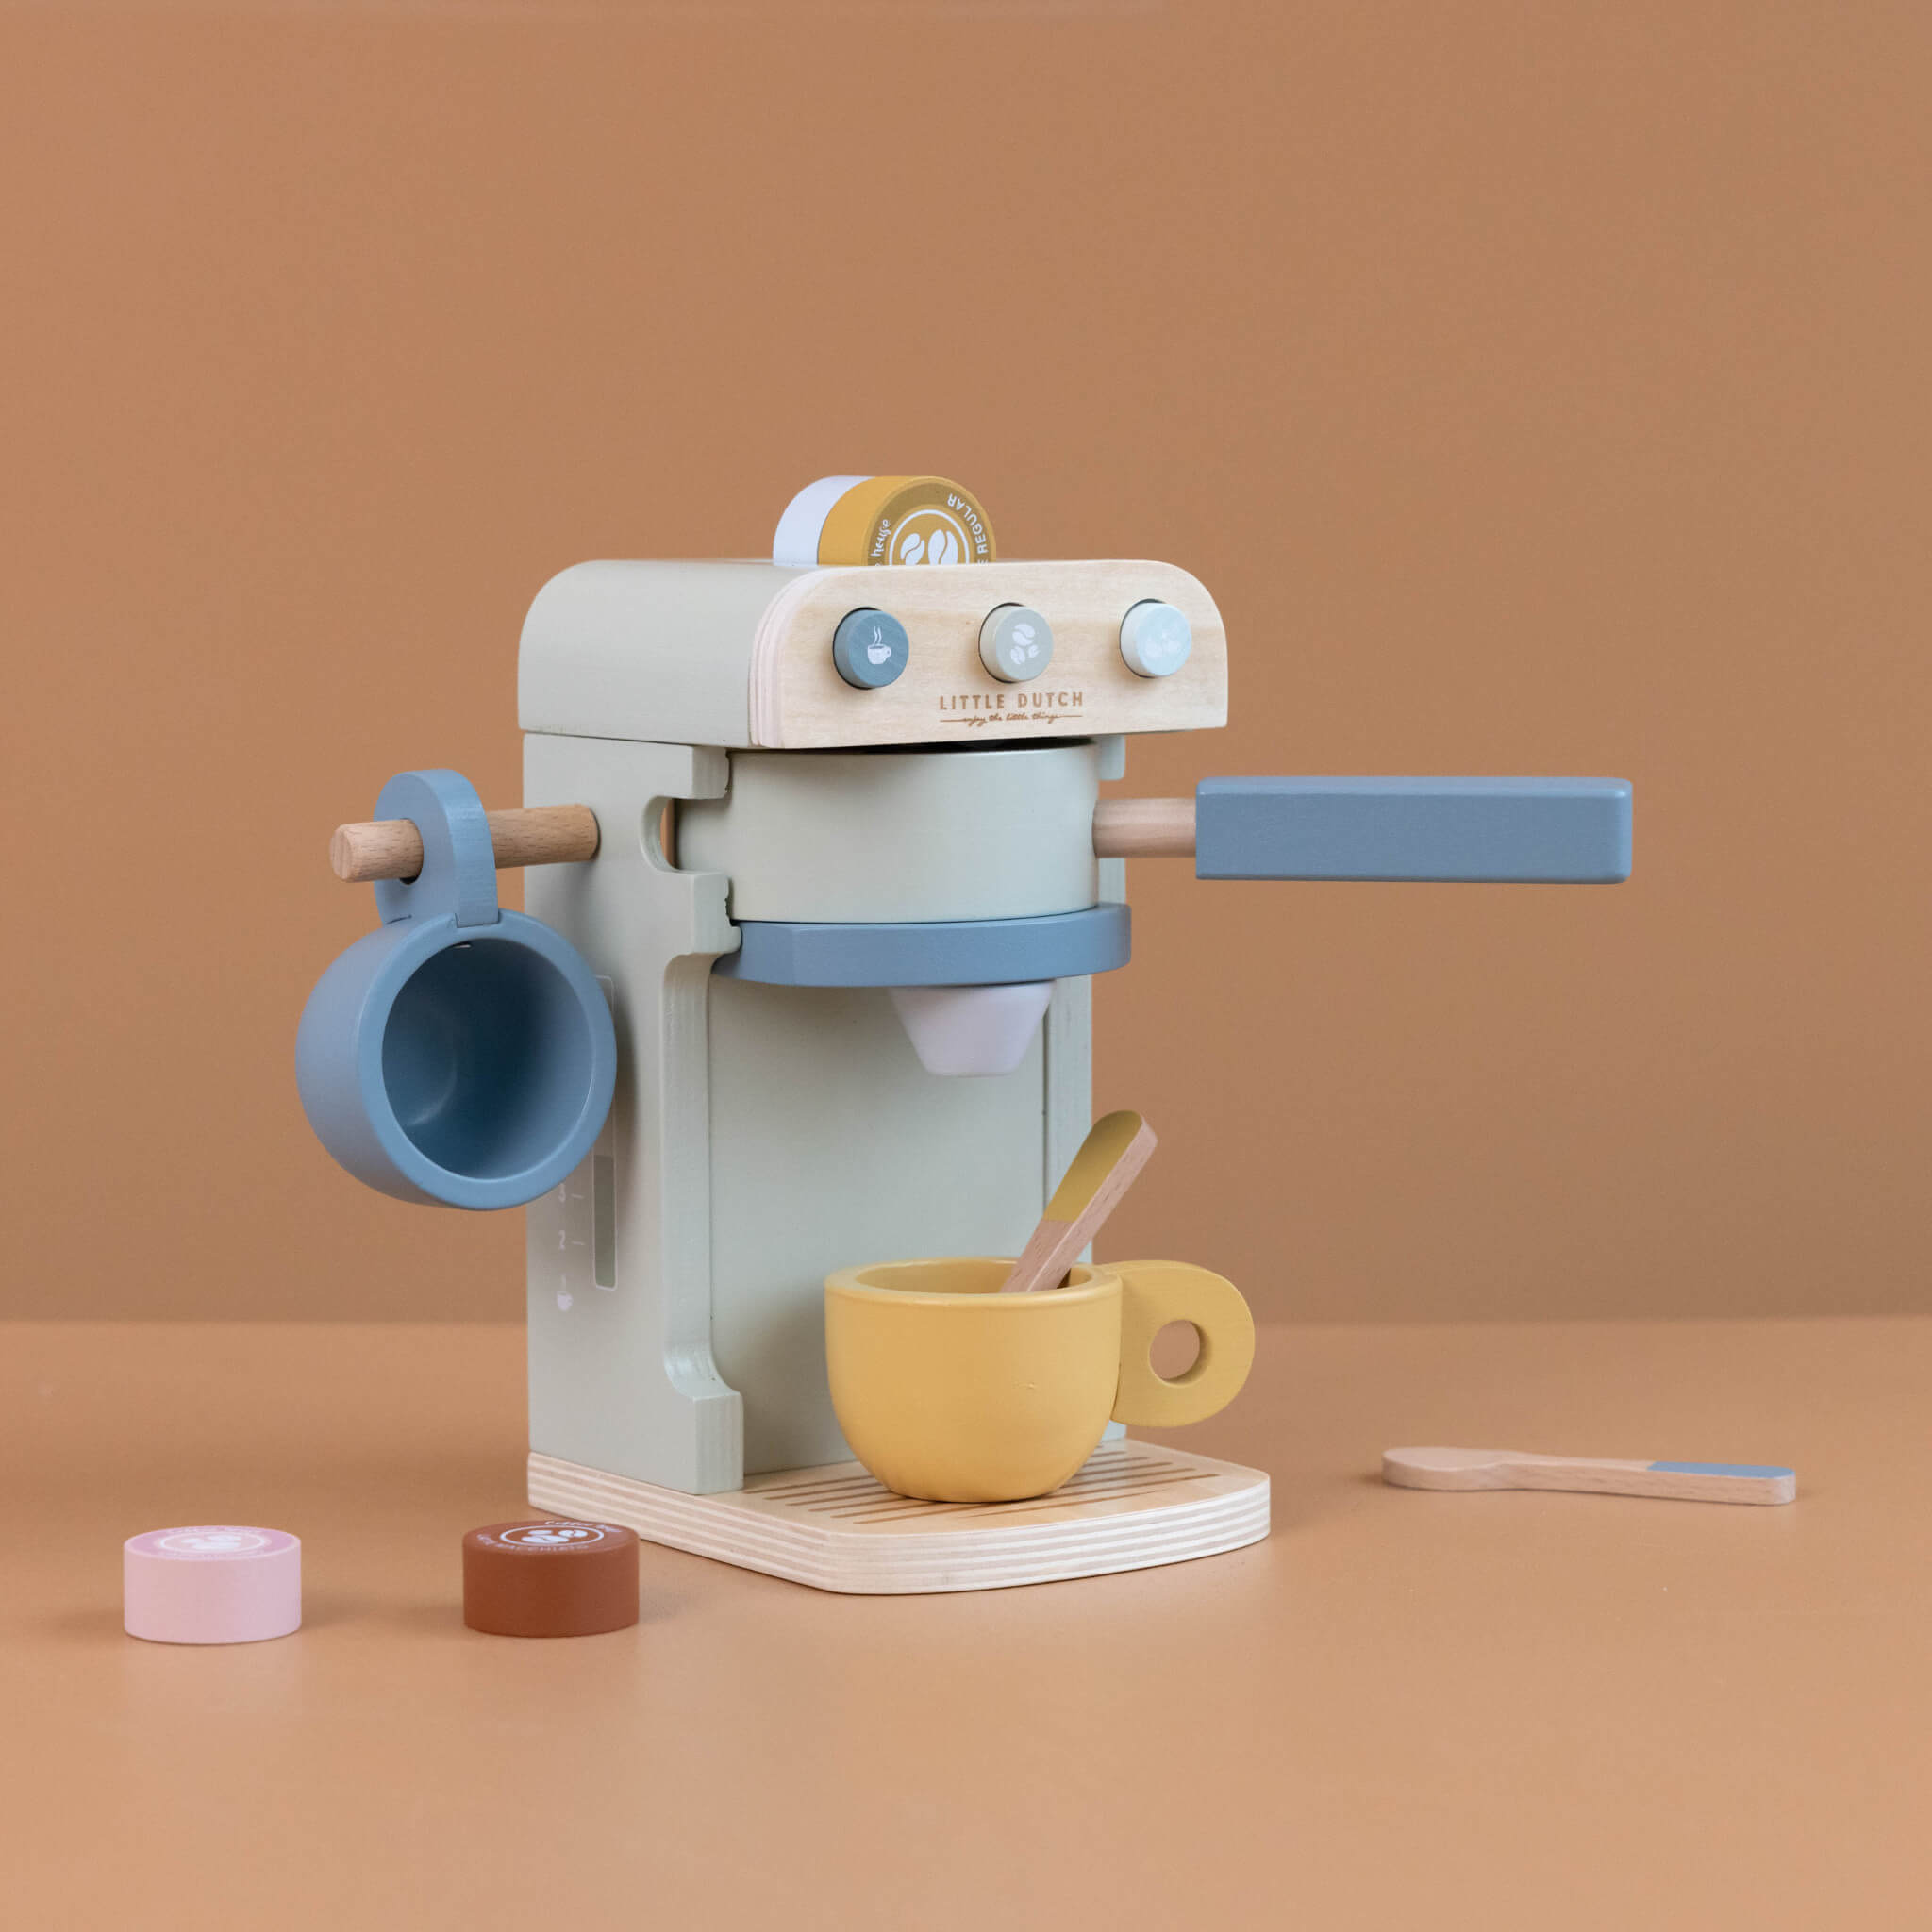 Little Dutch Wooden Toy Coffee Machine